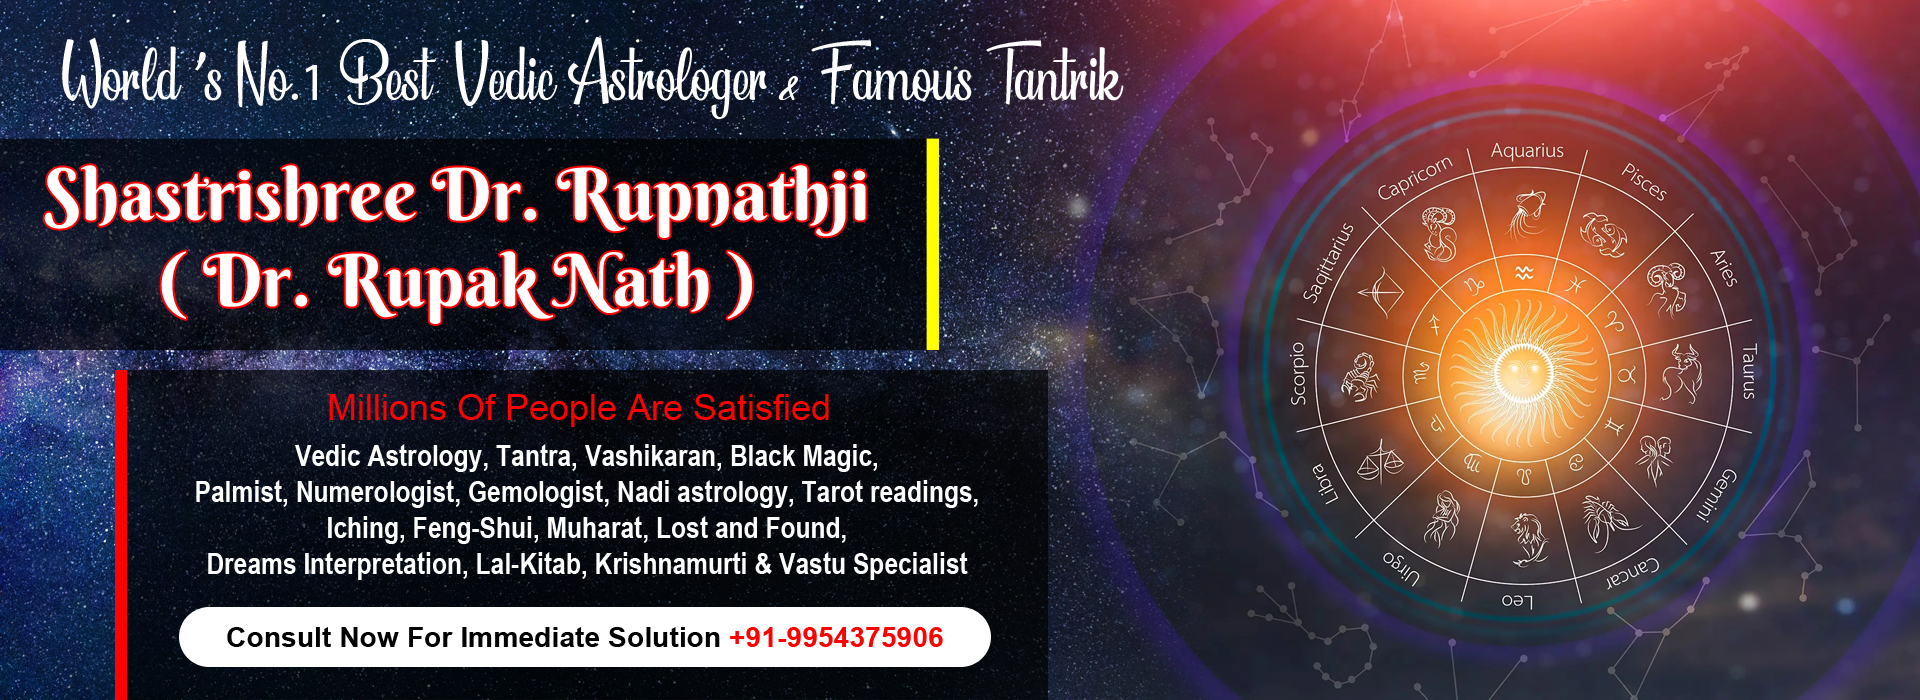 Best Vedic Astrologer